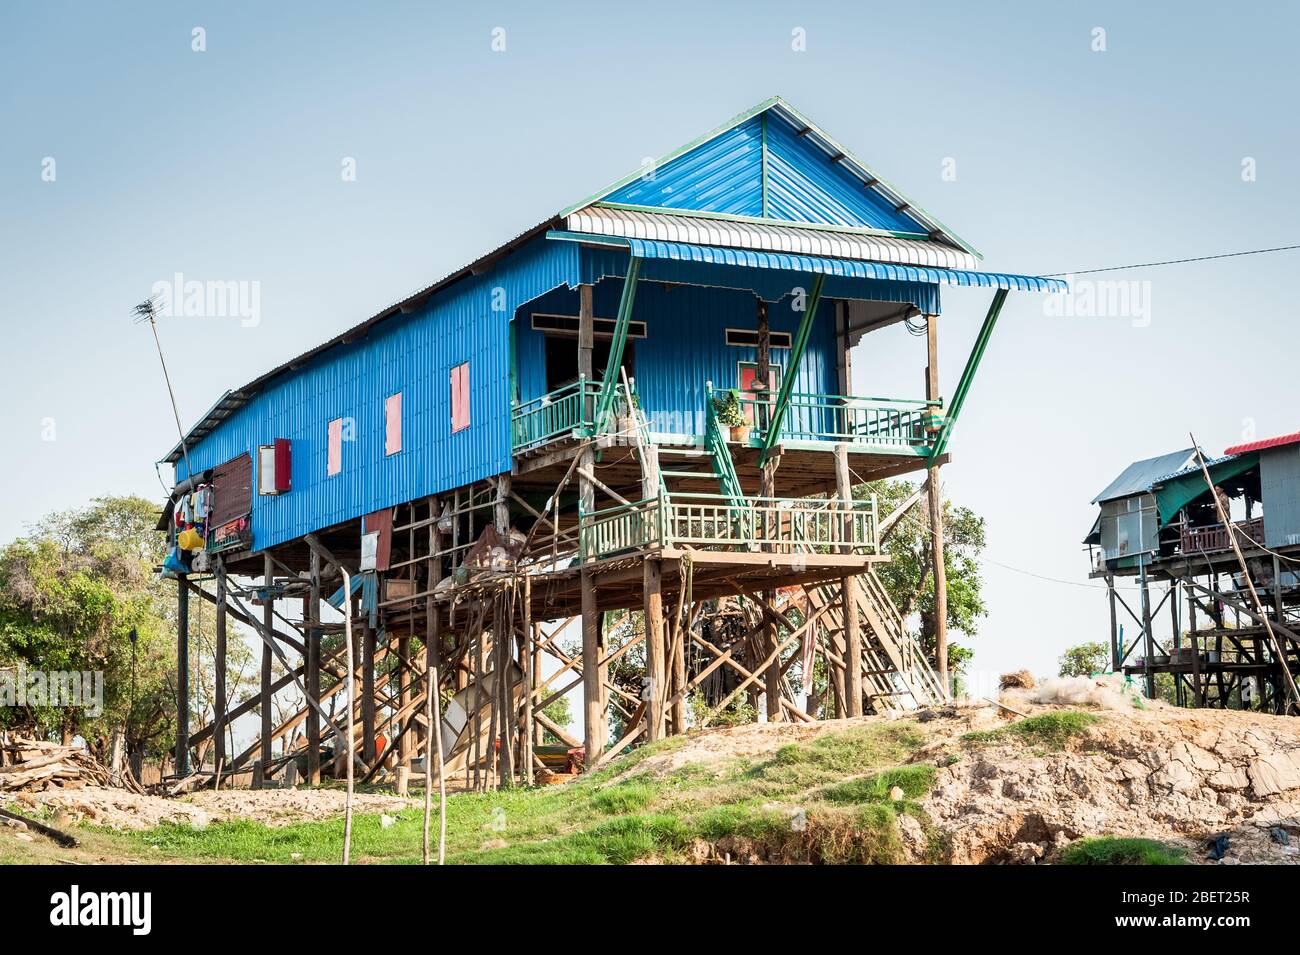 Photos des incroyables maisons sur pilotis au village flottant de Kampong Phluk près de Siem Reap, au Cambodge. Banque D'Images